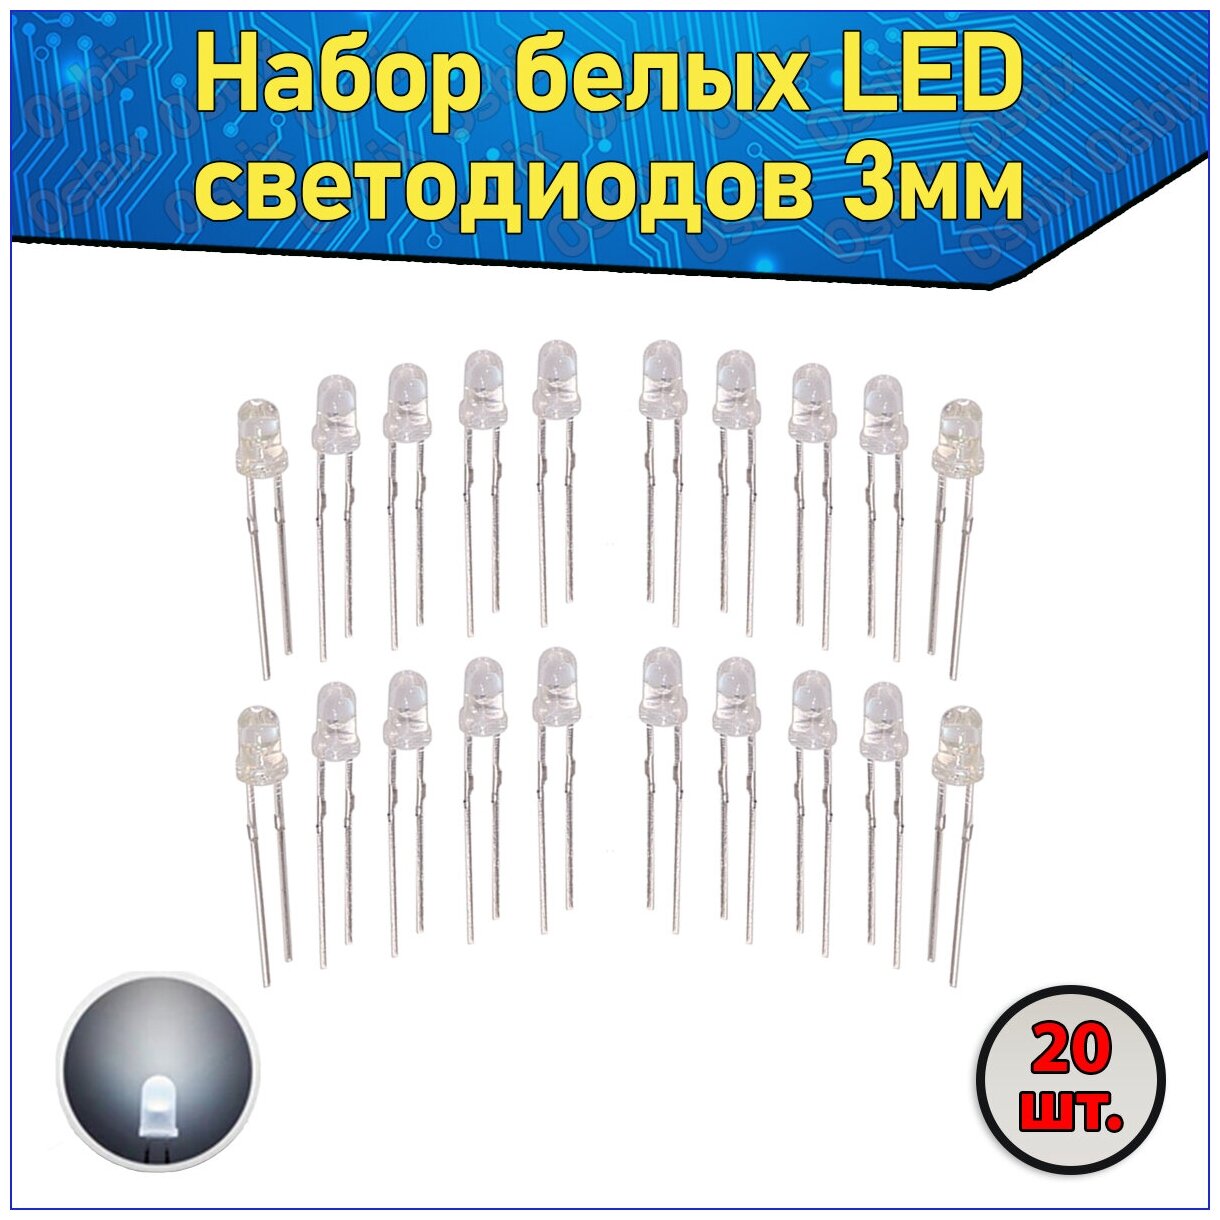 Набор белых LED светодиодов 3мм 20 шт. с короткими ножками & Комплект прозрачных F3 LED diode